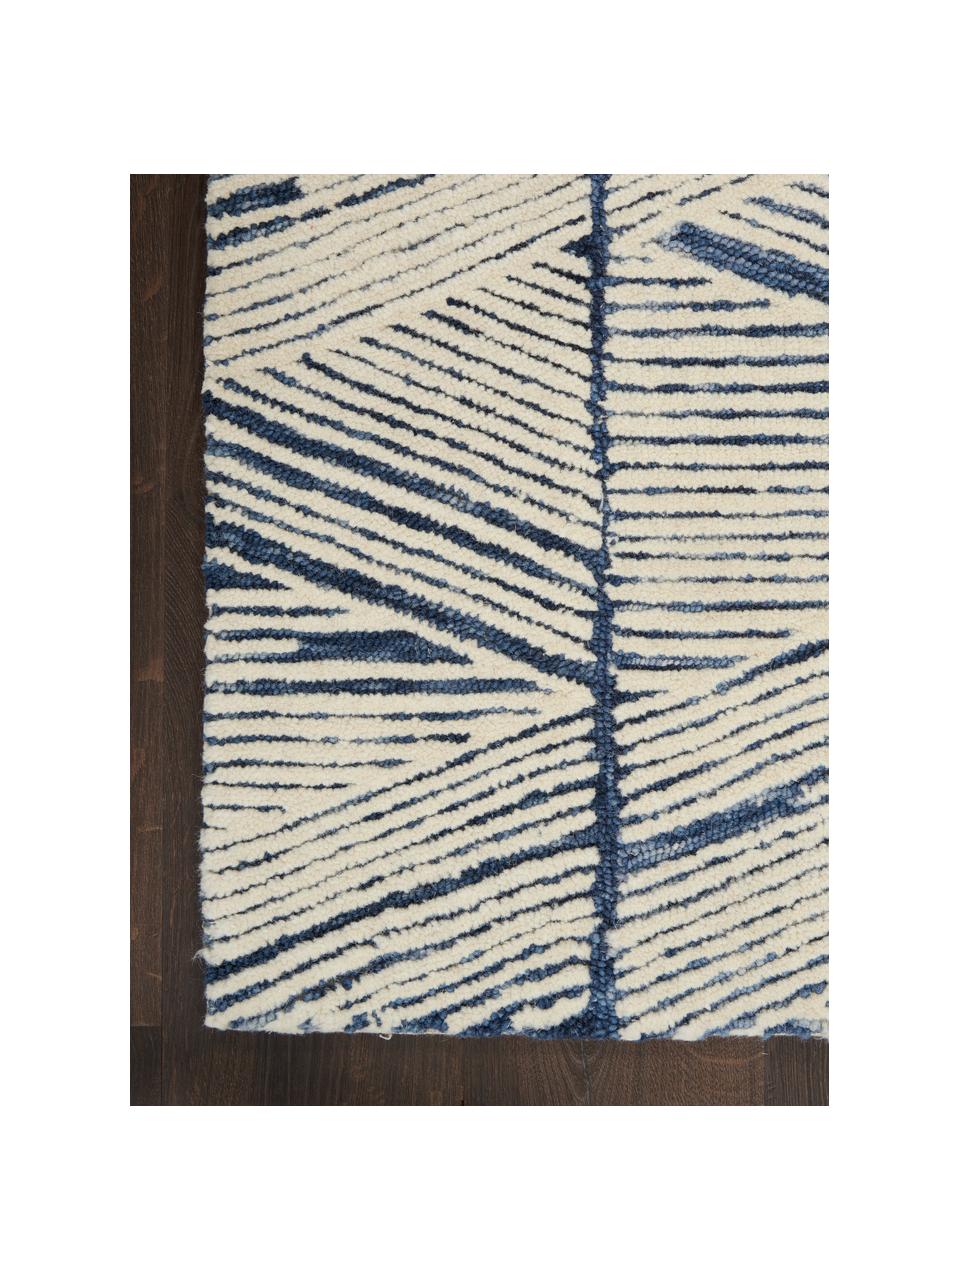 Ručně tkaný vlněný koberec Colorado, 100 % vlna

V prvních týdnech používání vlněných koberců se může objevit charakteristický jev uvolňování vláken, který po několika týdnech používání ustane., Krémově bílá, tmavě modrá, Š 120 cm, D 180 cm (velikost S)